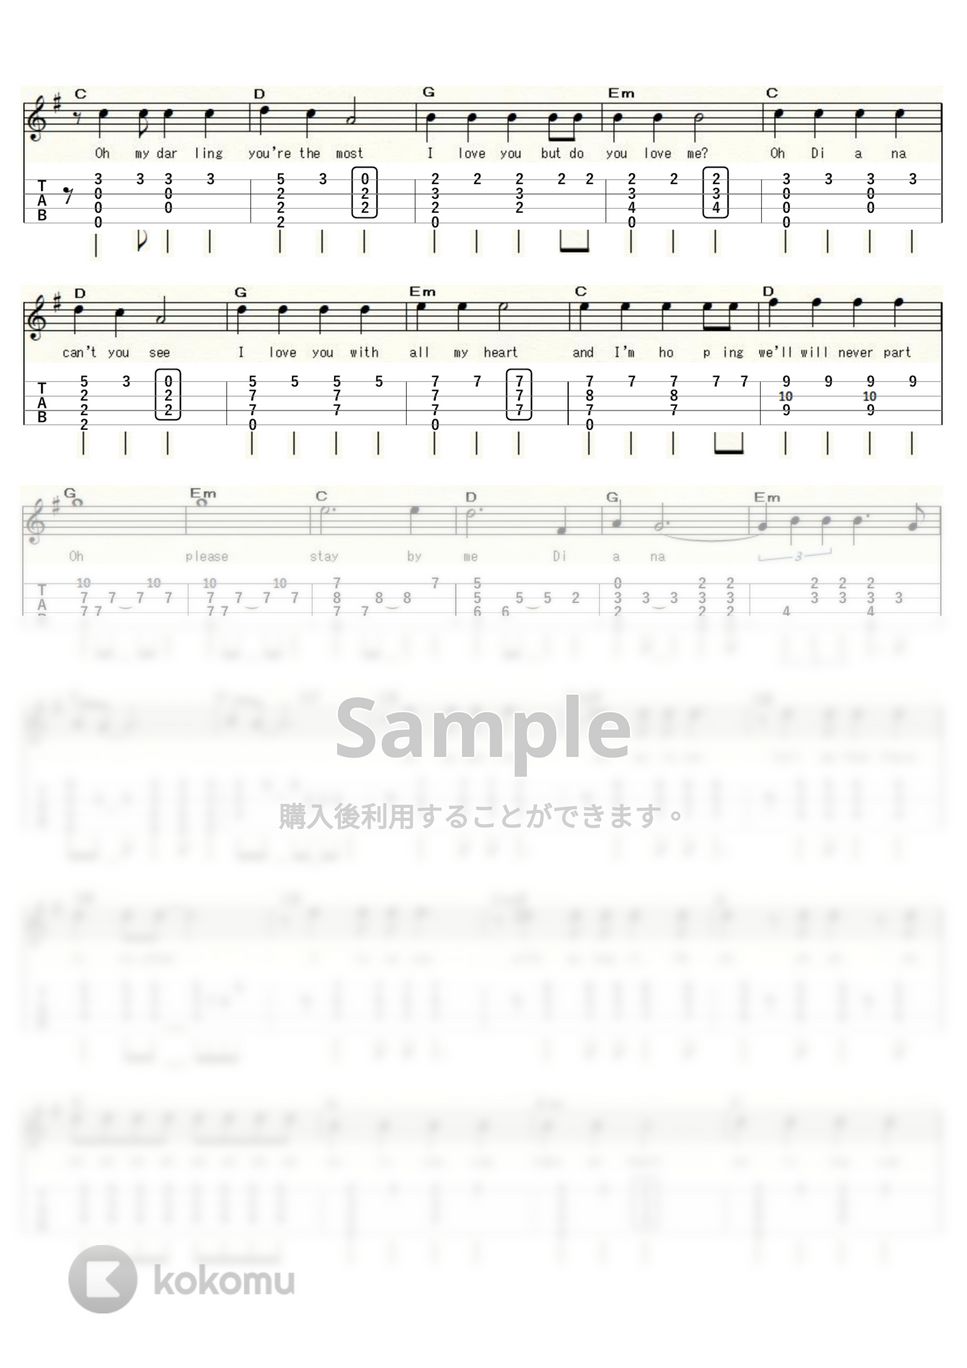 ポール・アンカ - DIANA (ｳｸﾚﾚｿﾛ/High-G・Low-G/中級) by ukulelepapa